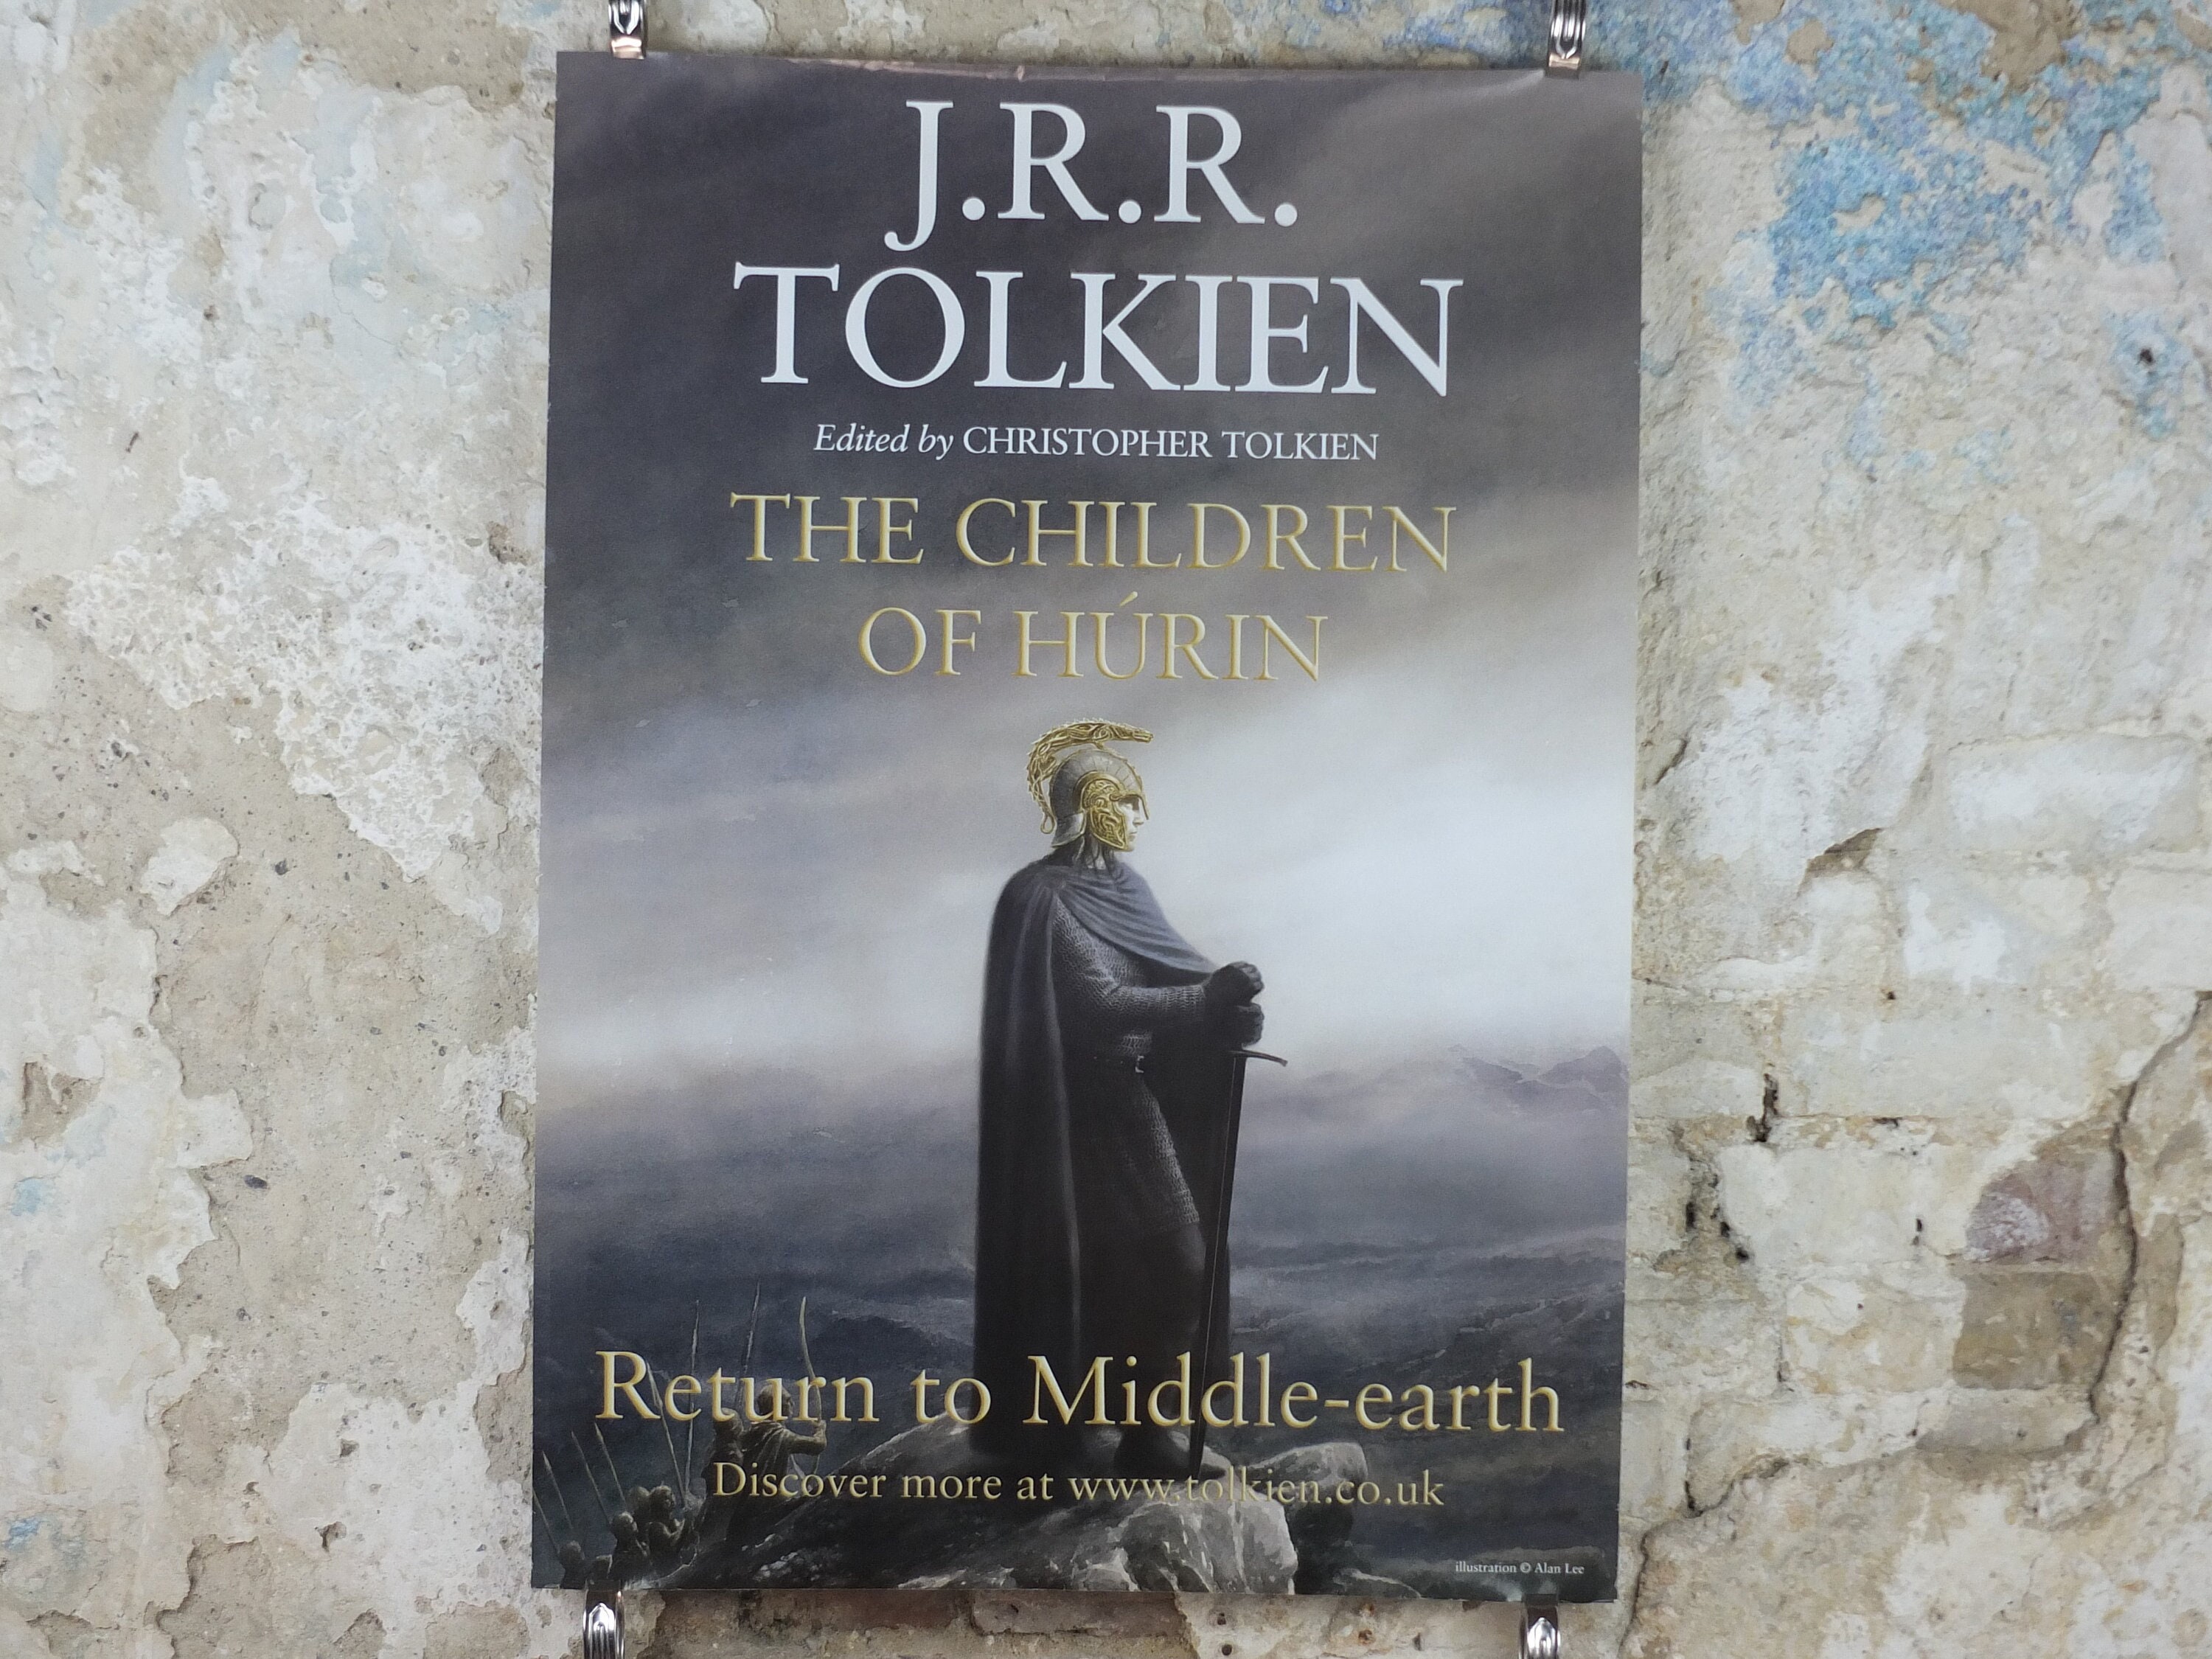 The Children of Húrin by J.R.R. Tolkien